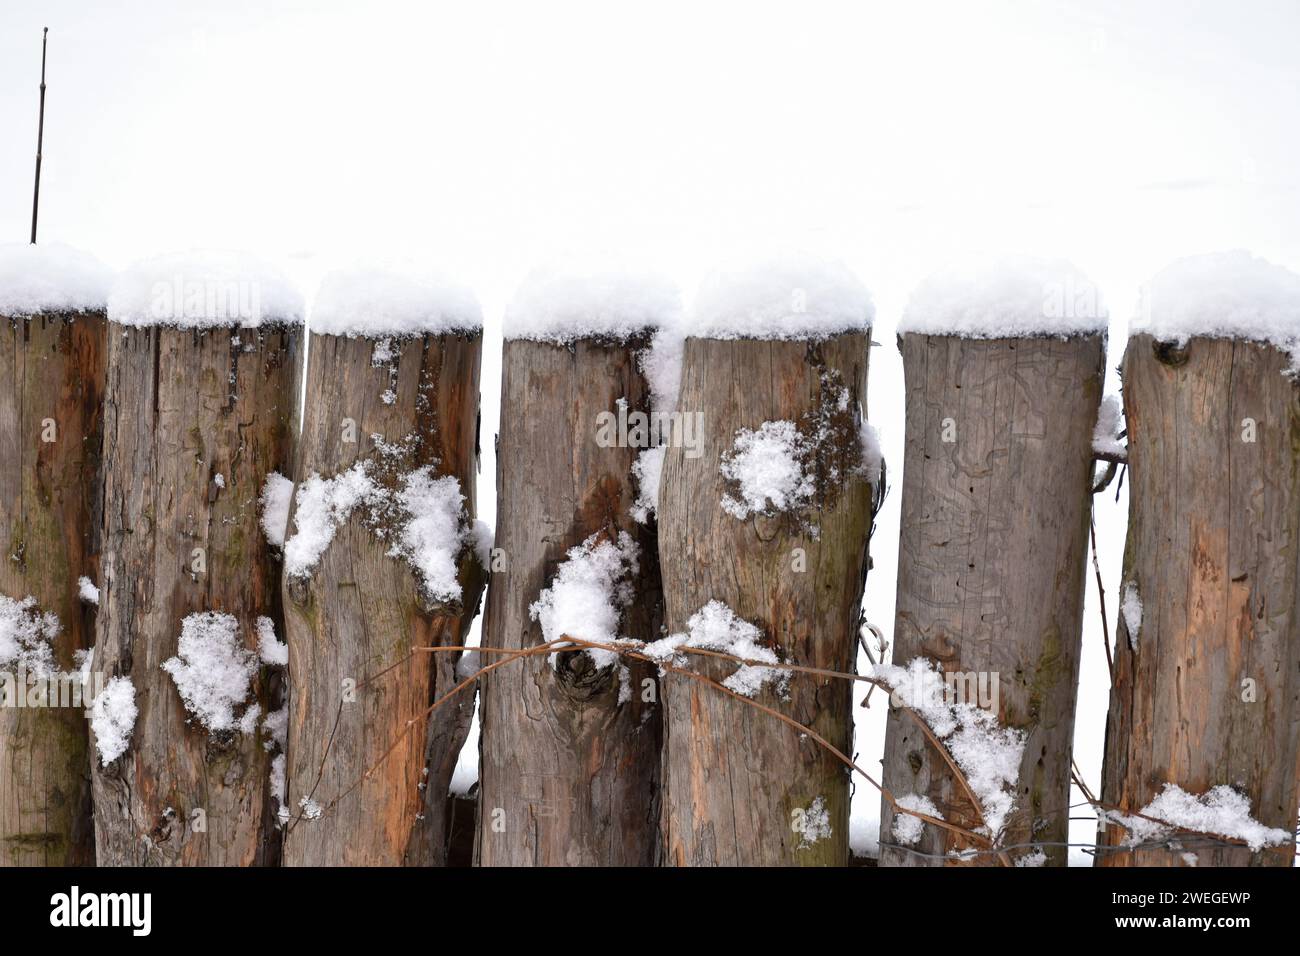 Clôture en bois vintage, poteaux en bois, bûches verticales recouvertes de neige blanche moelleuse. Campagne hivernale, temps froid, détails texturés. Banque D'Images